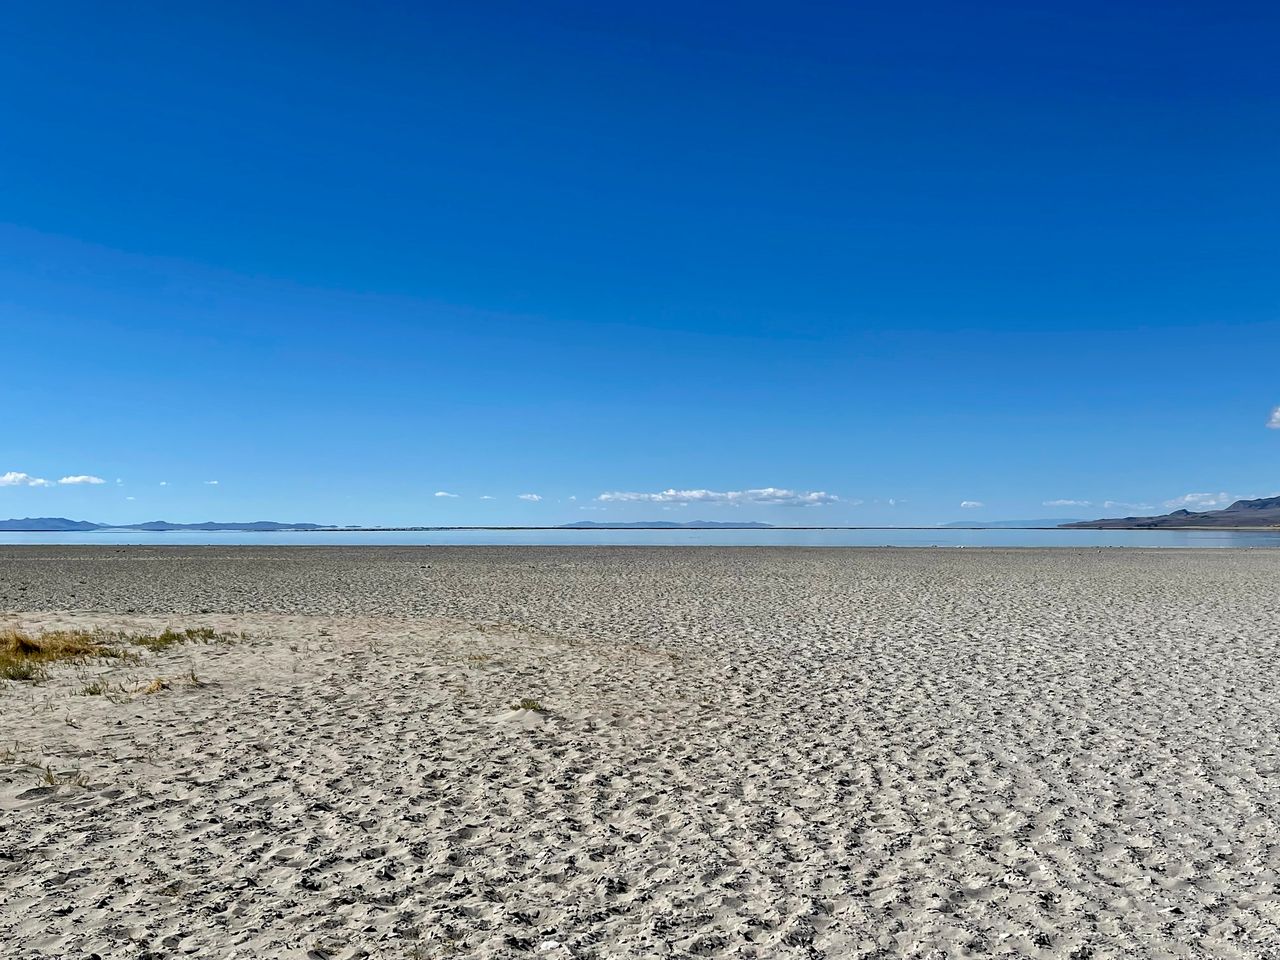 A orillas del Grand Lac Salé, una enorme playa blanca se extiende donde solía estar el agua estancada. [Jordan Davis - RTS]